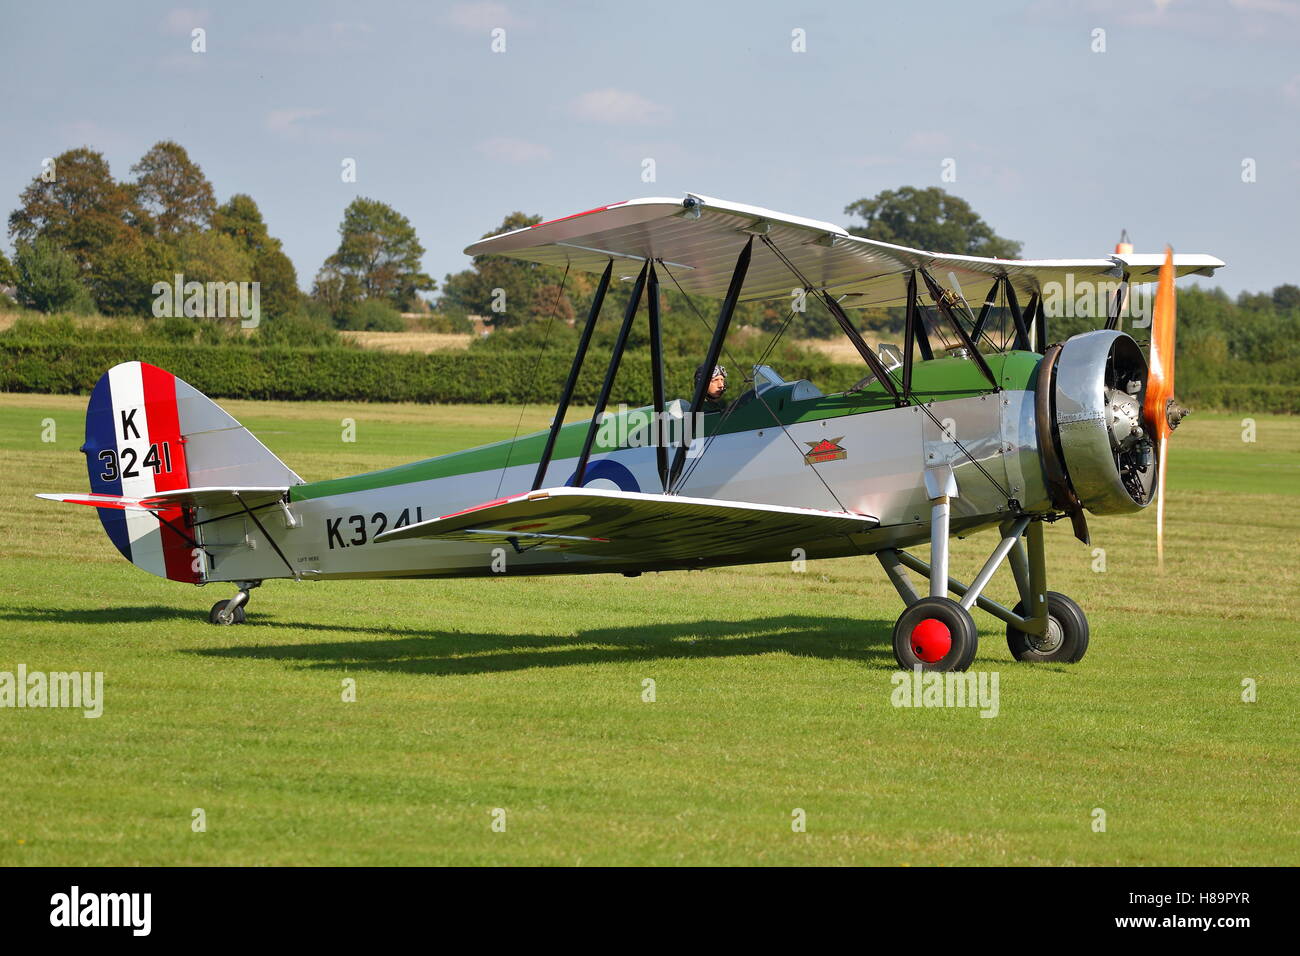 La Colección Shuttleworth Avro 621 Tutor G-Ahsa en una exhibición aérea en Old Warden, UK Foto de stock